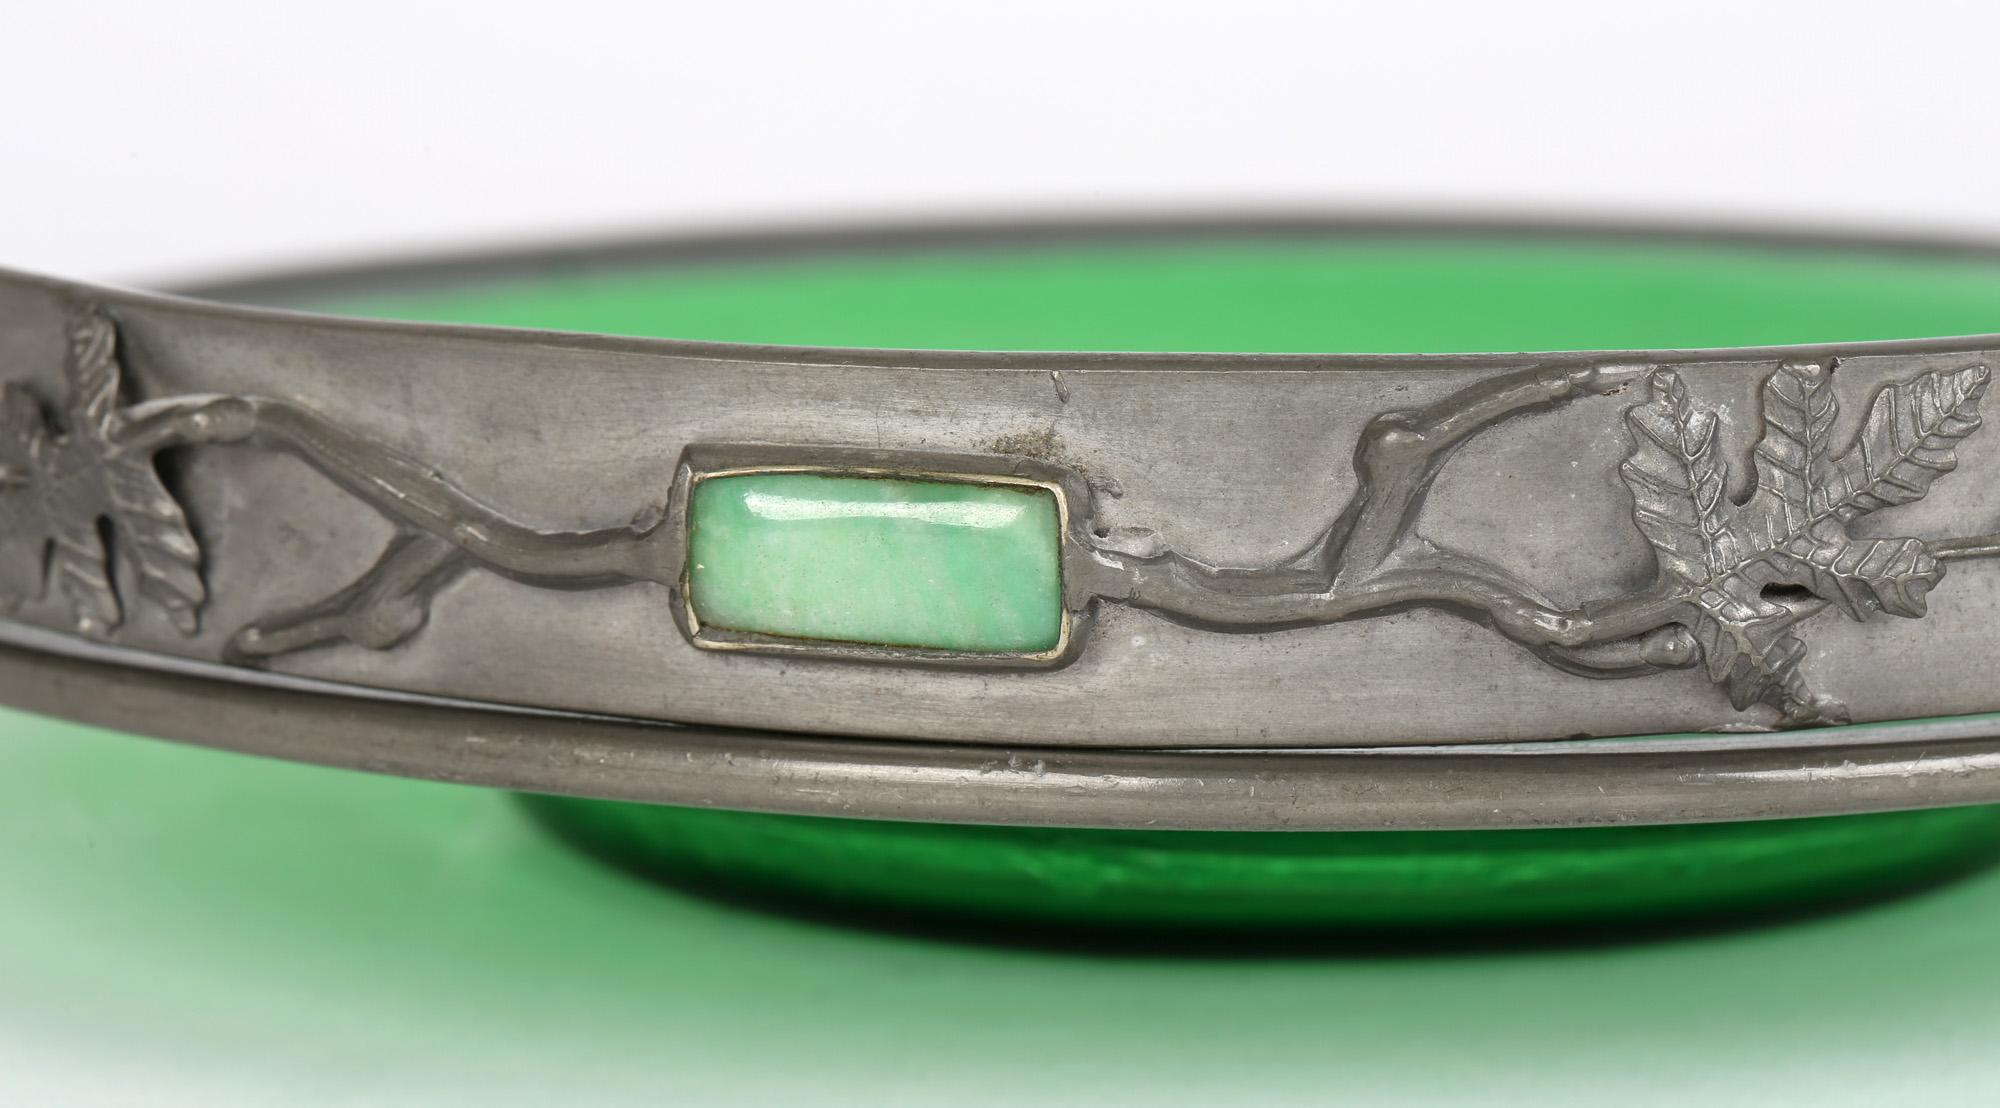 Inhabituel plat en verre vert monté en étain Arts & Crafts, l'anse pivotante incrustée de pierres précieuses polies, datant du début du 20e siècle. Ce plat de qualité finement fabriqué présente un plat arrondi en verre soufflé vert tacheté avec un